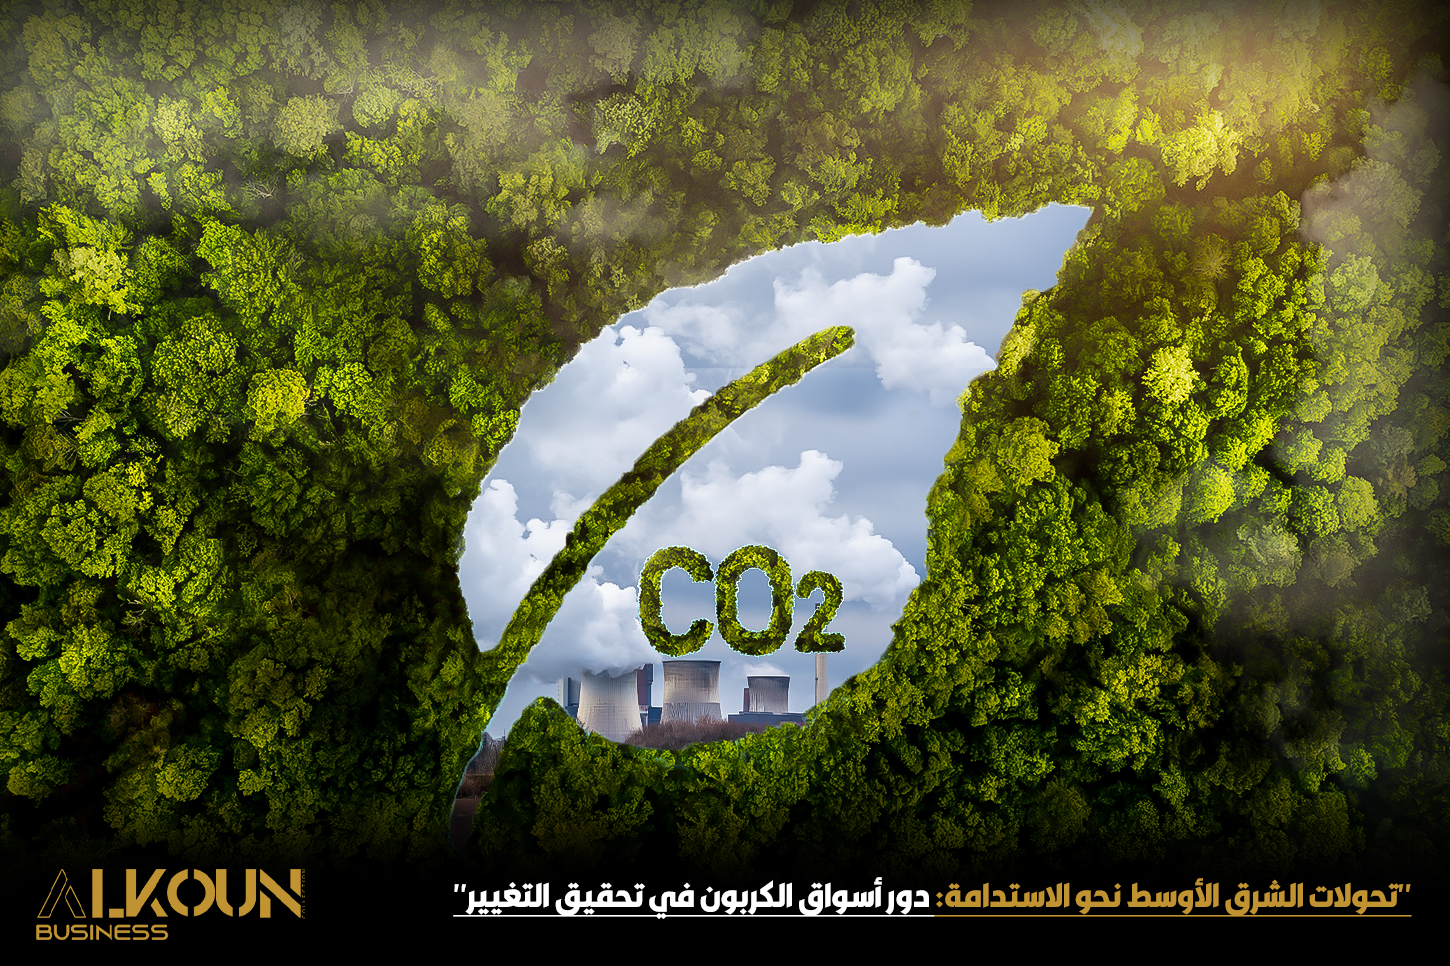 "تحولات الشرق الأوسط نحو الاستدامة: دور أسواق الكربون في تحقيق التغيير"